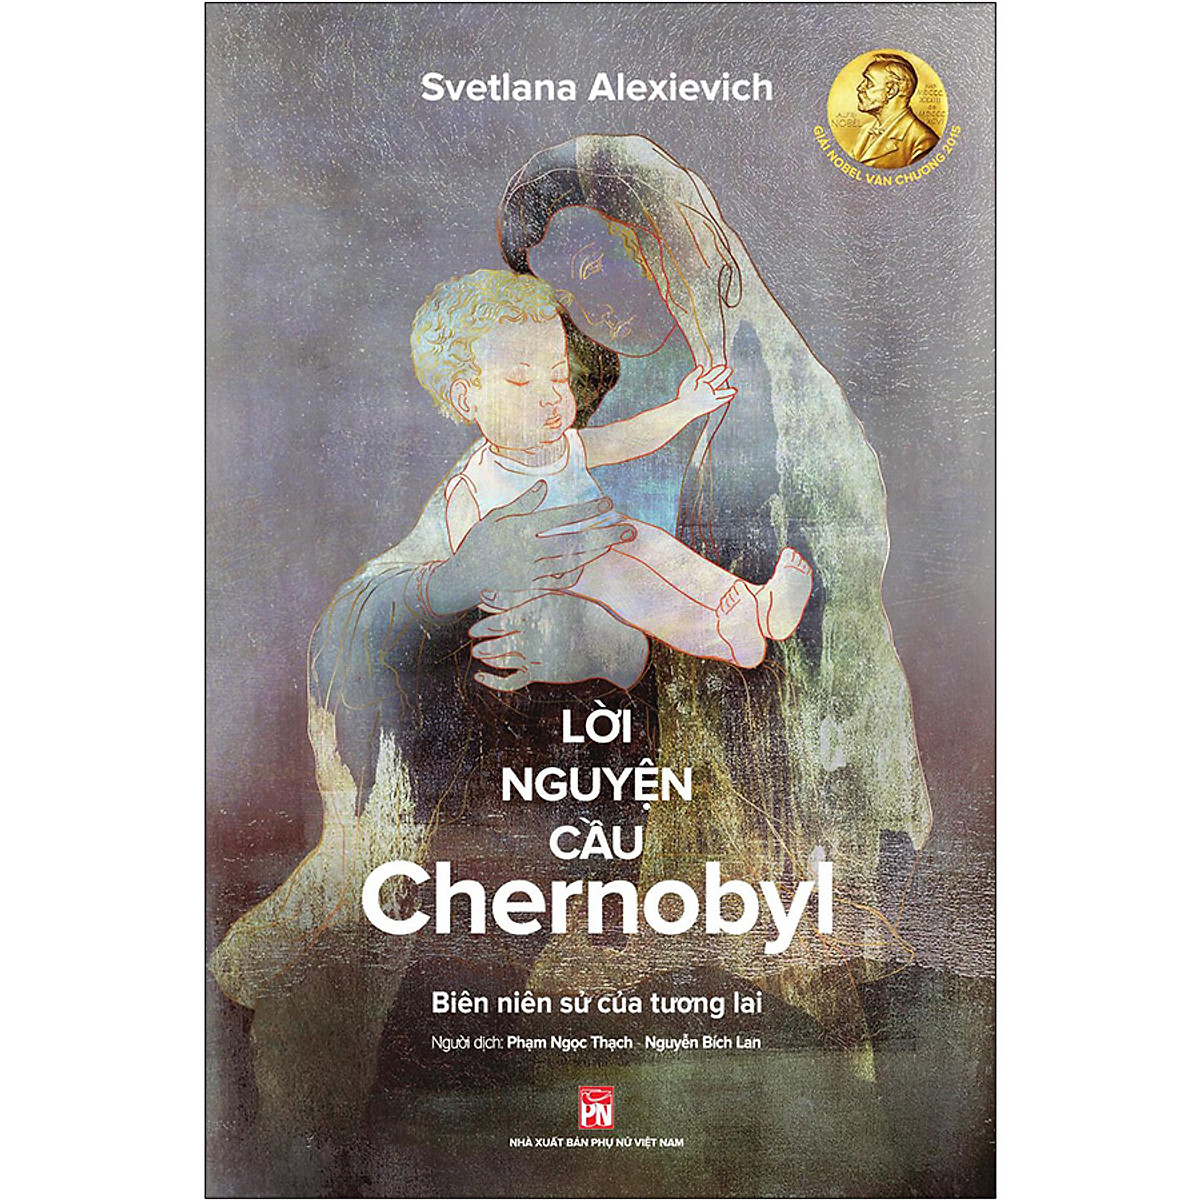 Lời Nguyện Cầu Chernobyl (Biên Niên Sử Của Tương Lai)